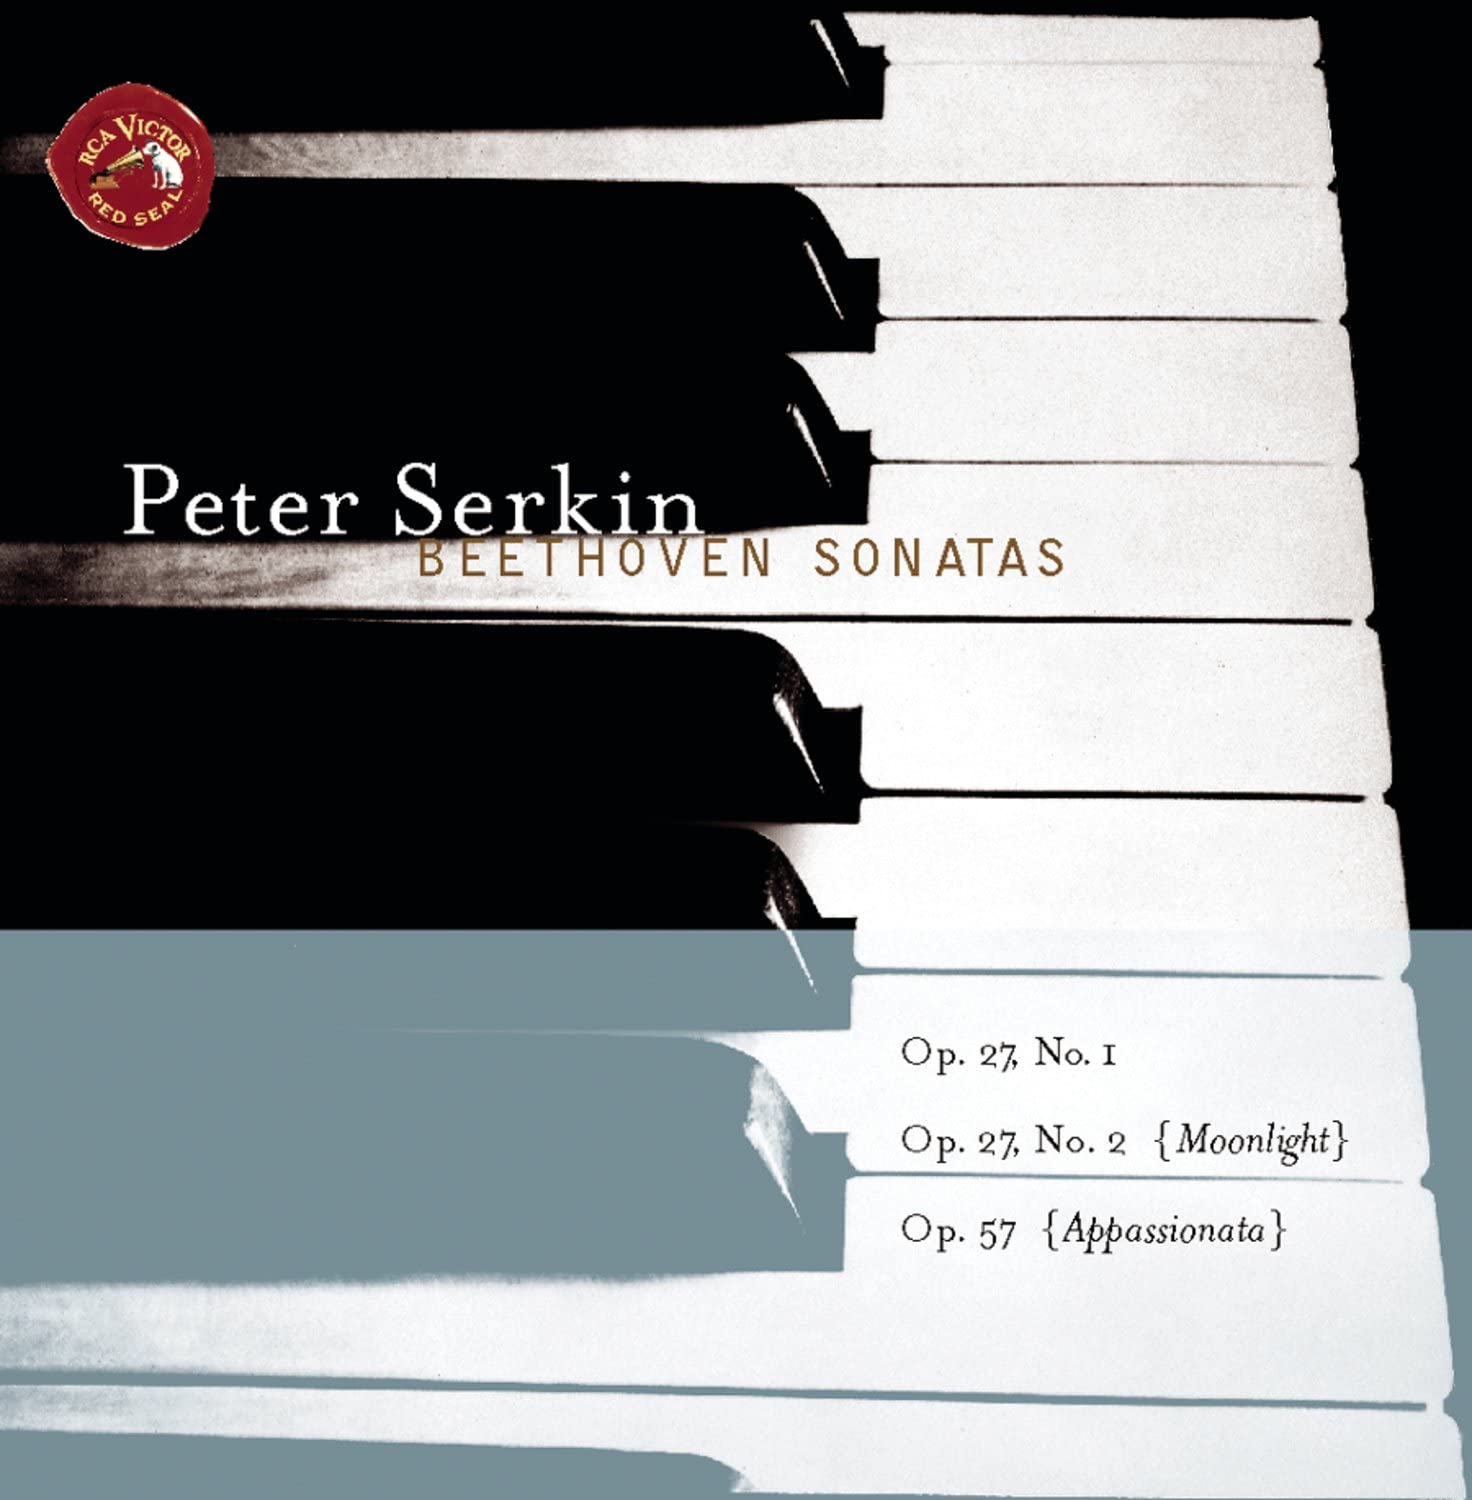 PETER SERKIN - BEETHOVEN SONATAS OP. 27 NOS. 1 & 2, OP. 57